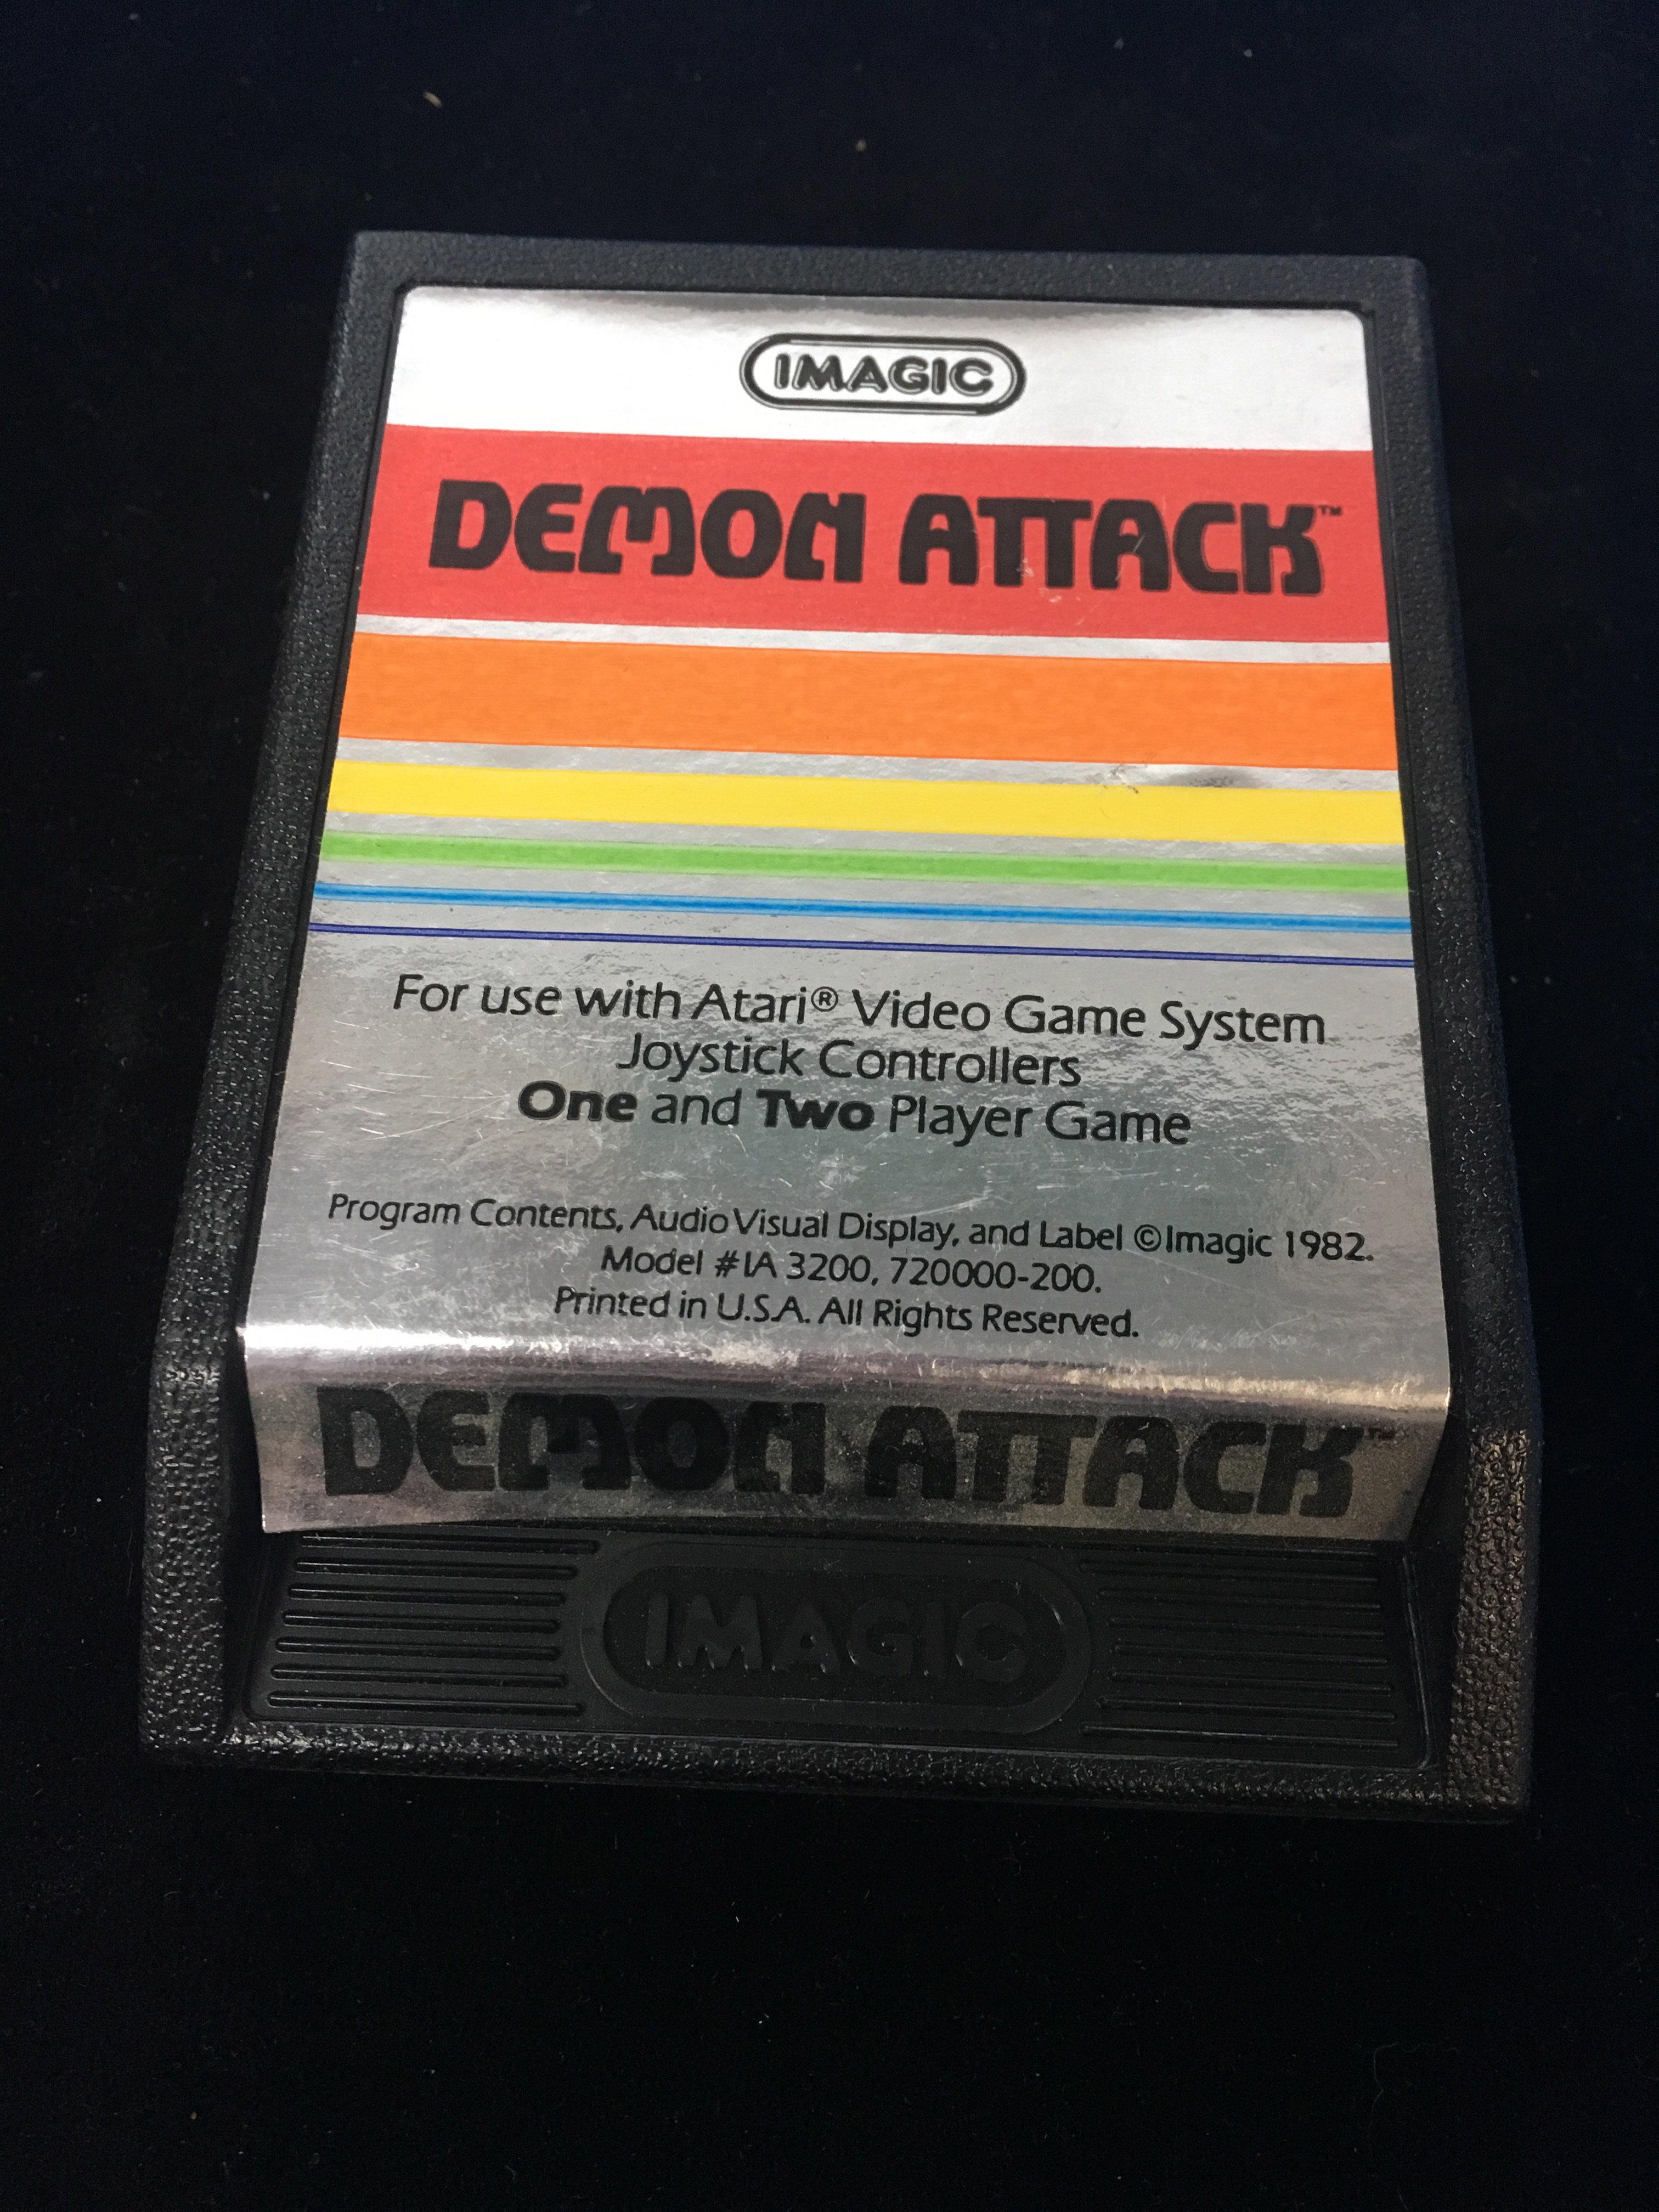 Atari Imagic Demon Attack Video Game Cartridge